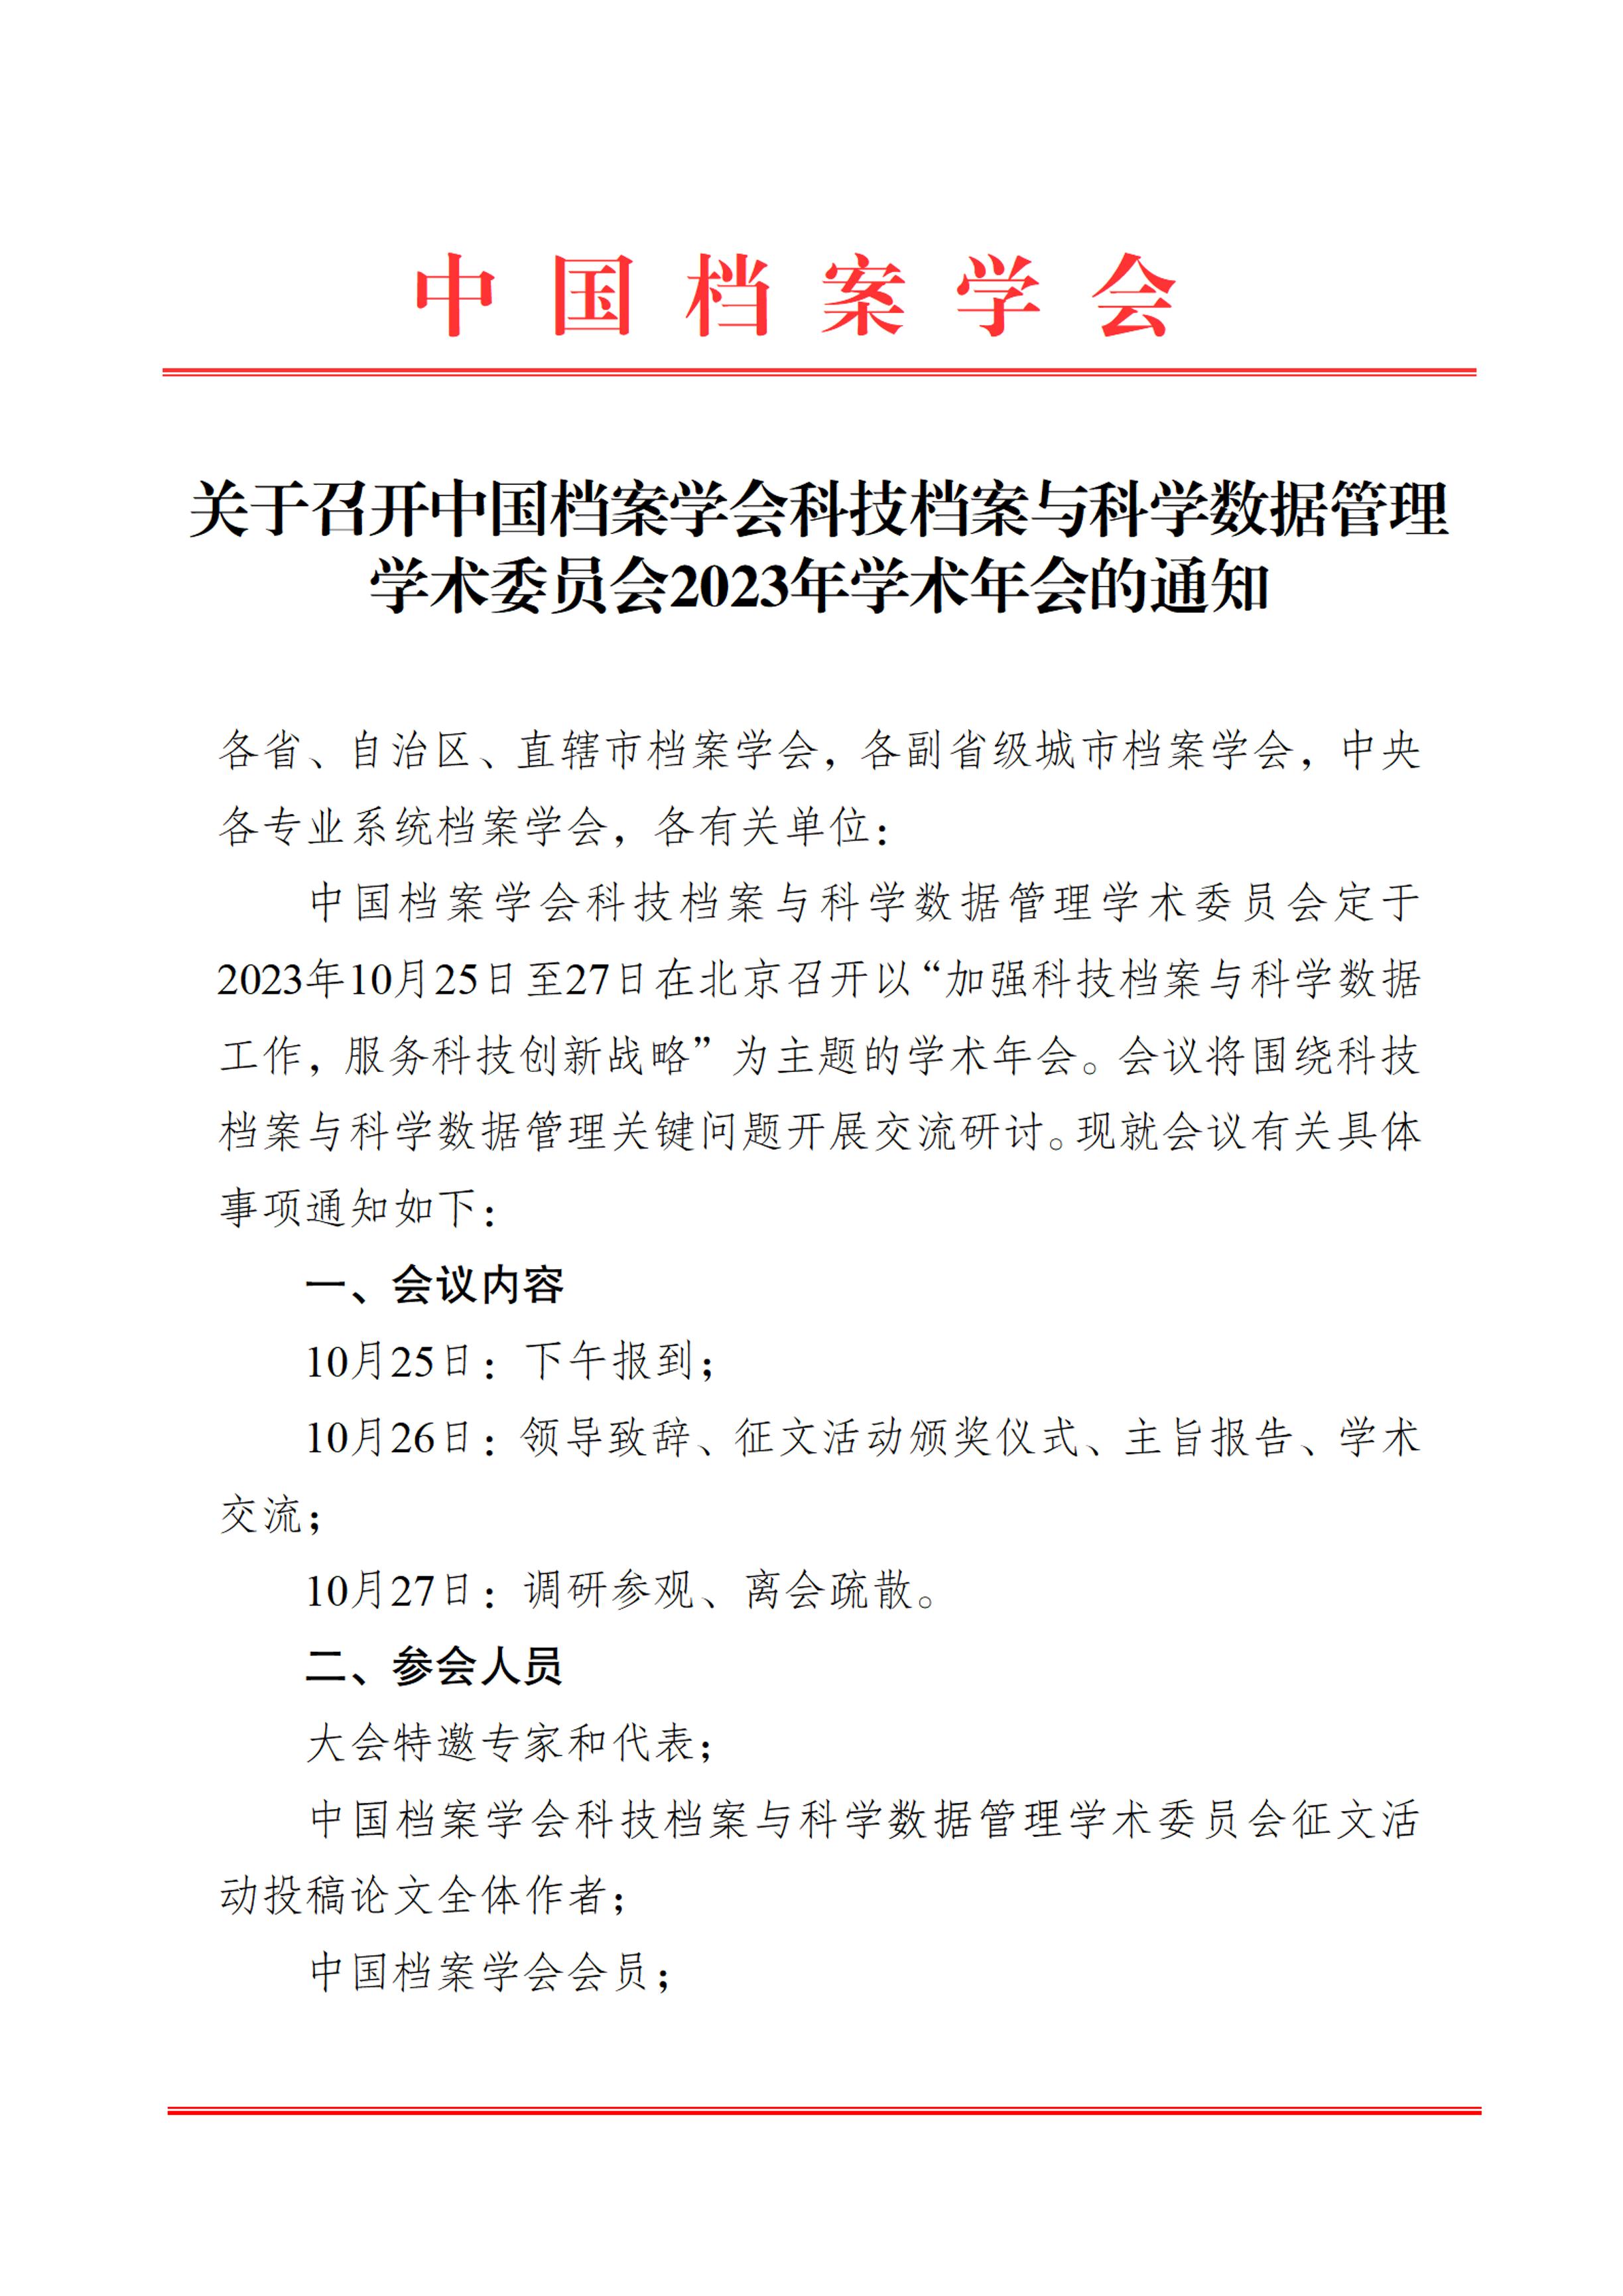 关于召开中国档案学会科技档案与科学数据管理学术委员会2023年学术年会的通知-0